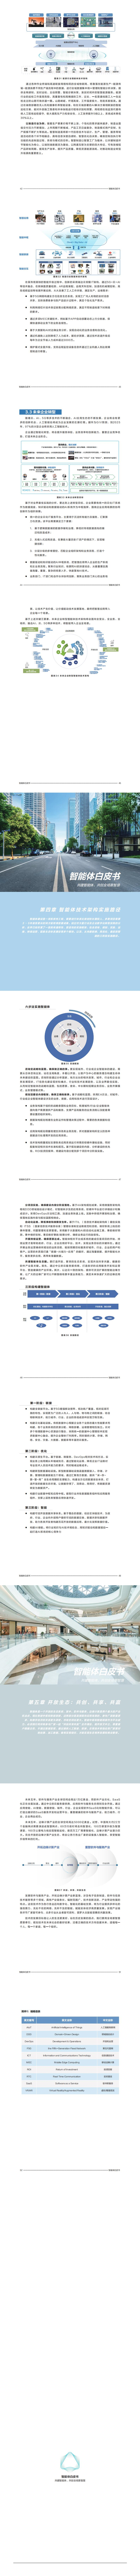 【中国信通院】科技行业智能体白皮书：共建智能体，共创全场景智慧（2020年）_2.jpg